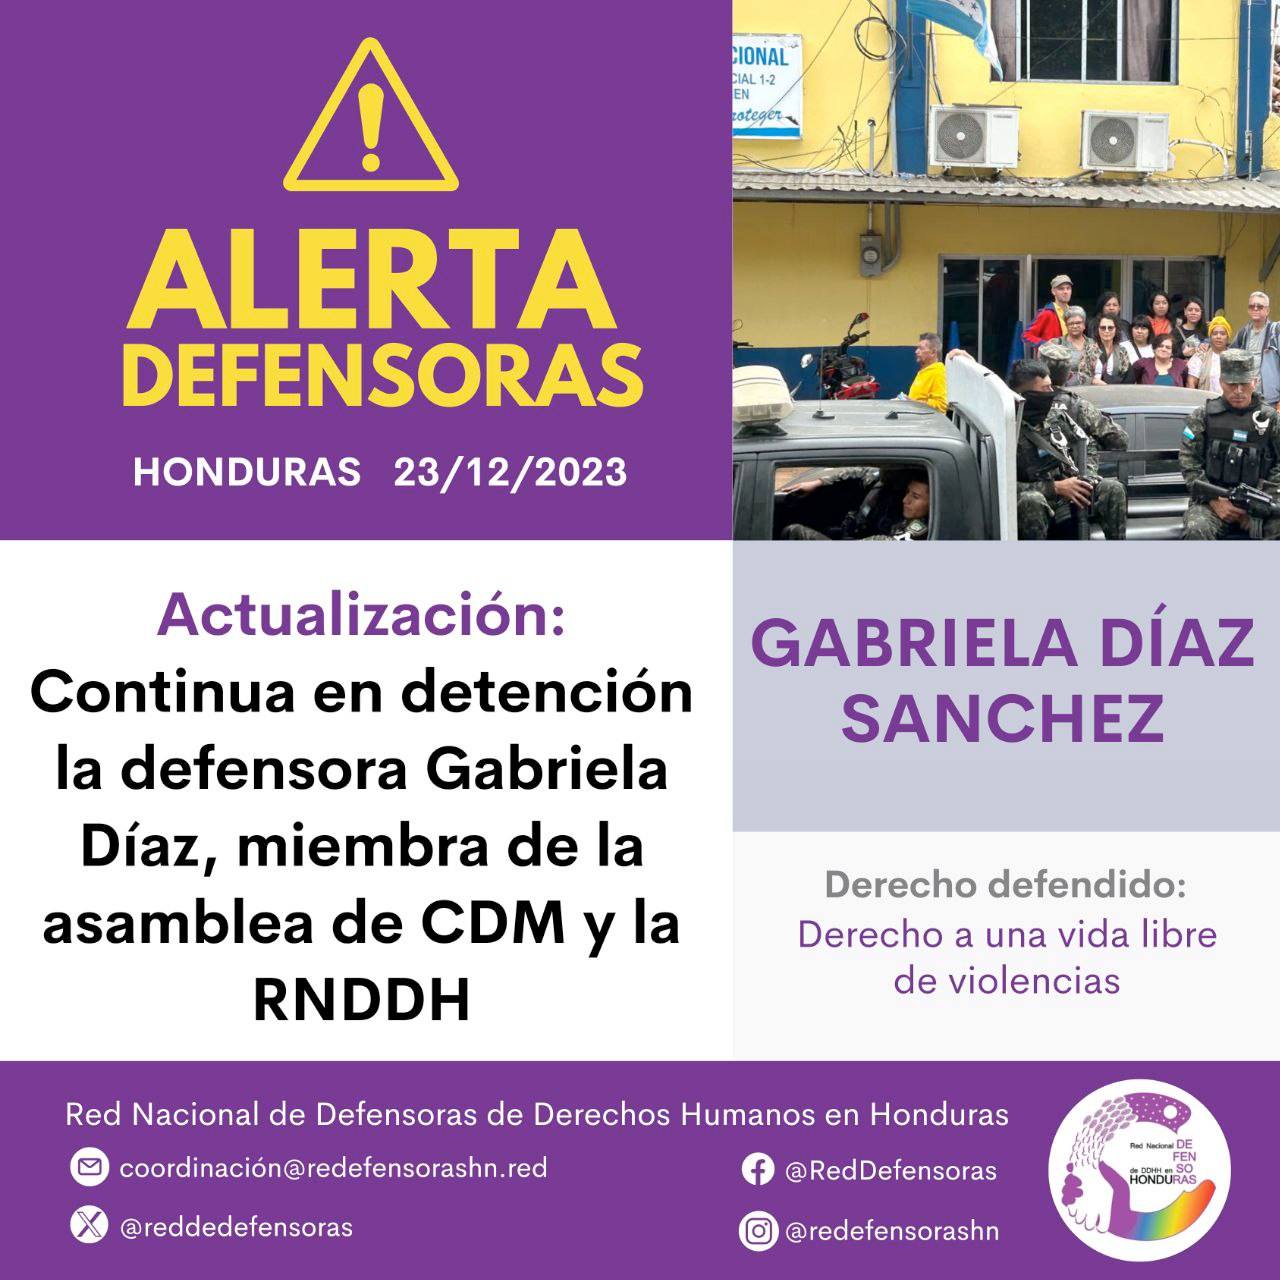 #AlertaDefensora│Continua en detención la defensora Gabriela Díaz Sánchez, miembra de la asamblea del Centro de Derechos de Mujeres y de la RNDDH.